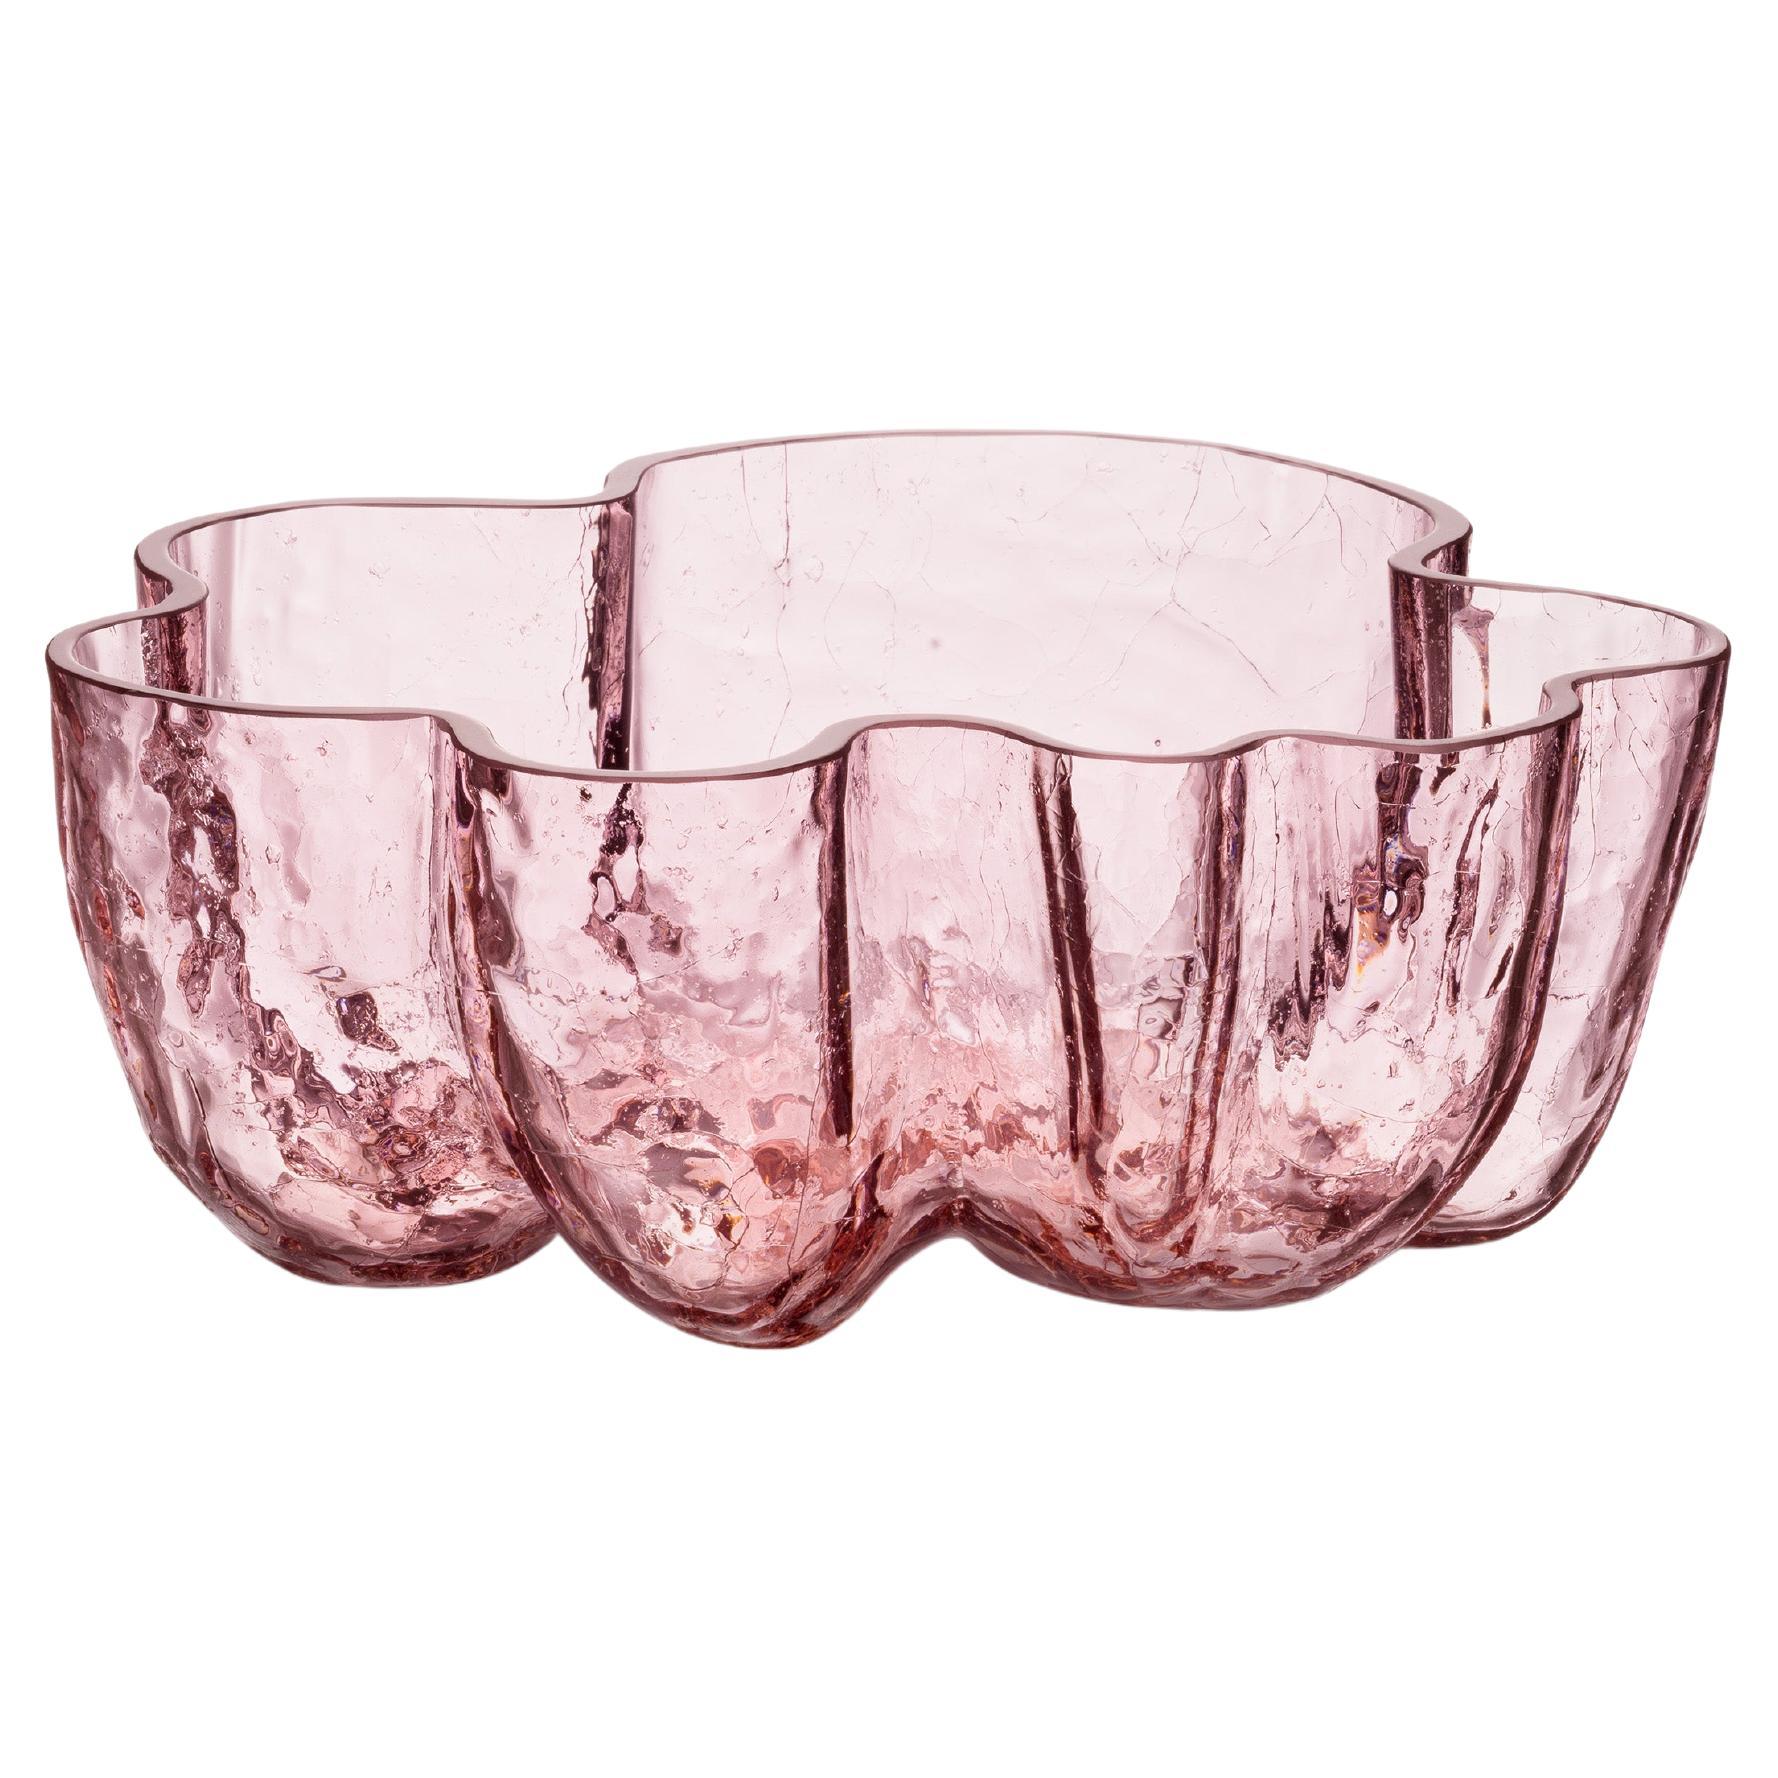 Kosta Boda Crackle Pink Bowl For Sale